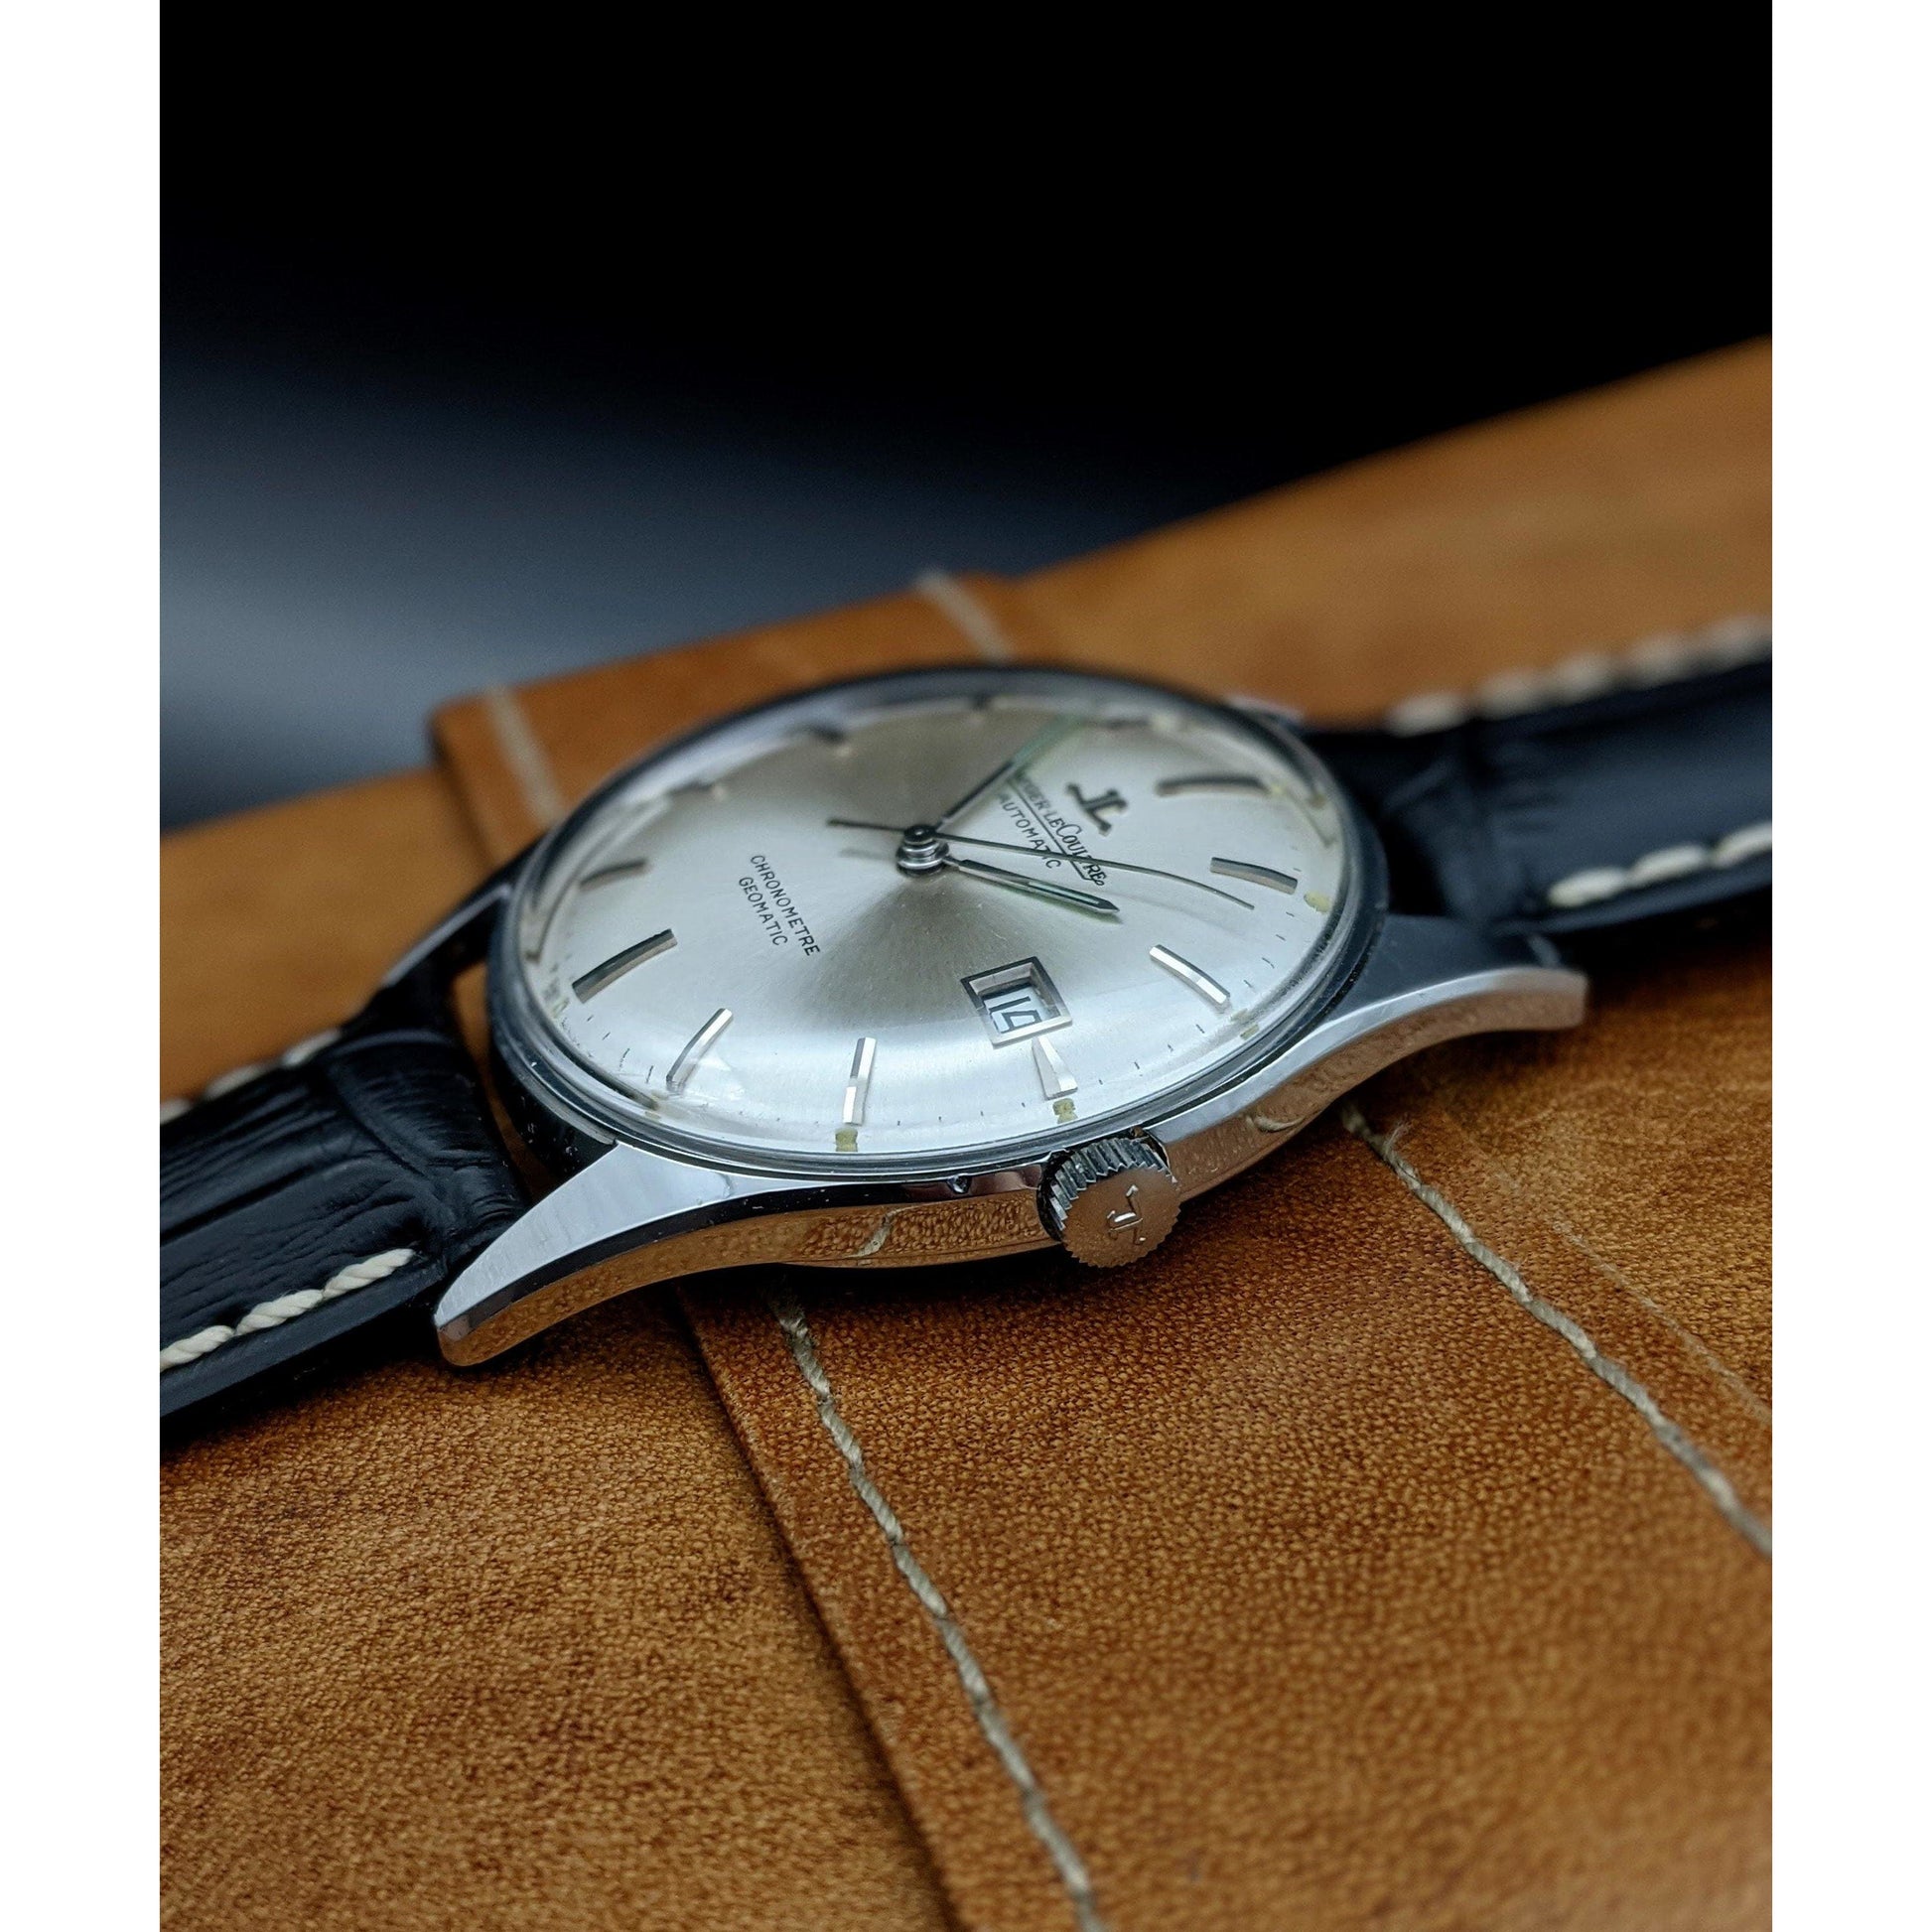 Jaeger-LeCoultre Rare Chronometre Geomatic / Vintage 1960's / Serviced - E-V-W.com